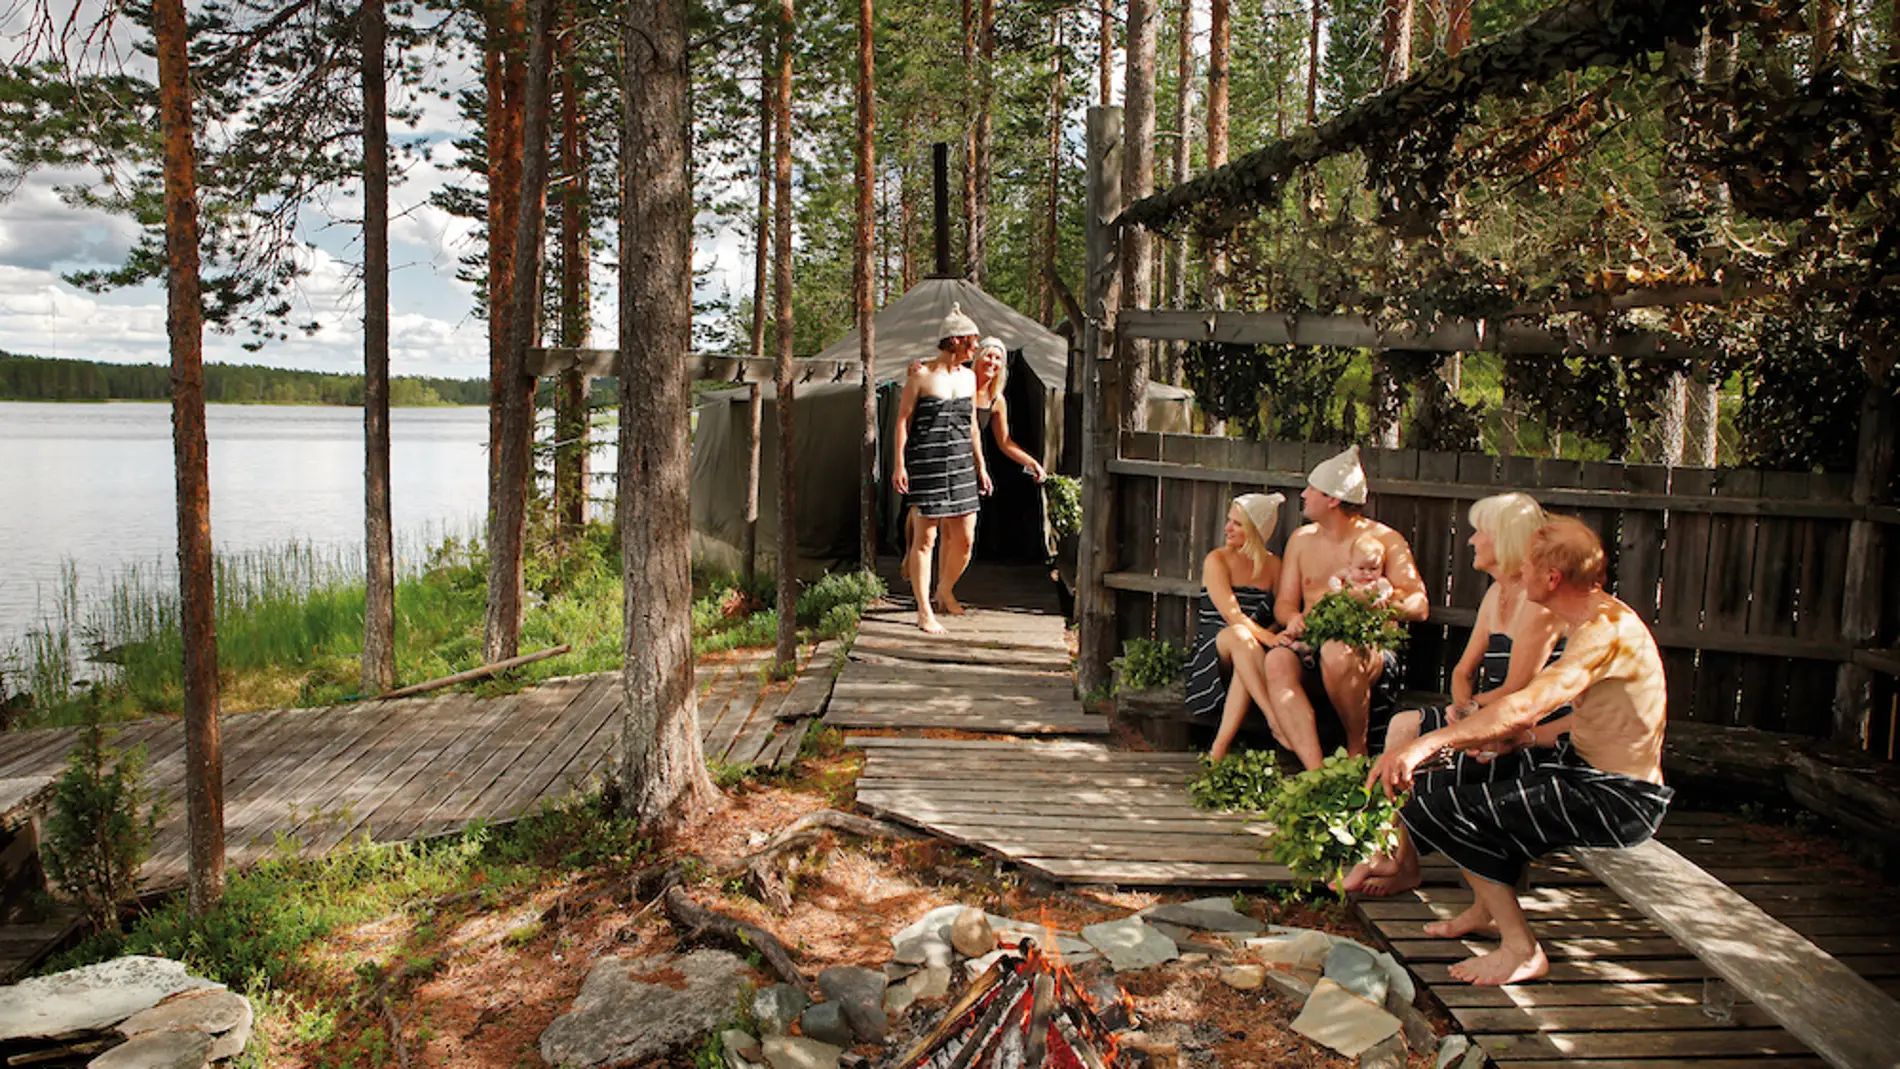 Ruta de las saunas finlandesas, una propuesta para los amantes del turismo de bienestar